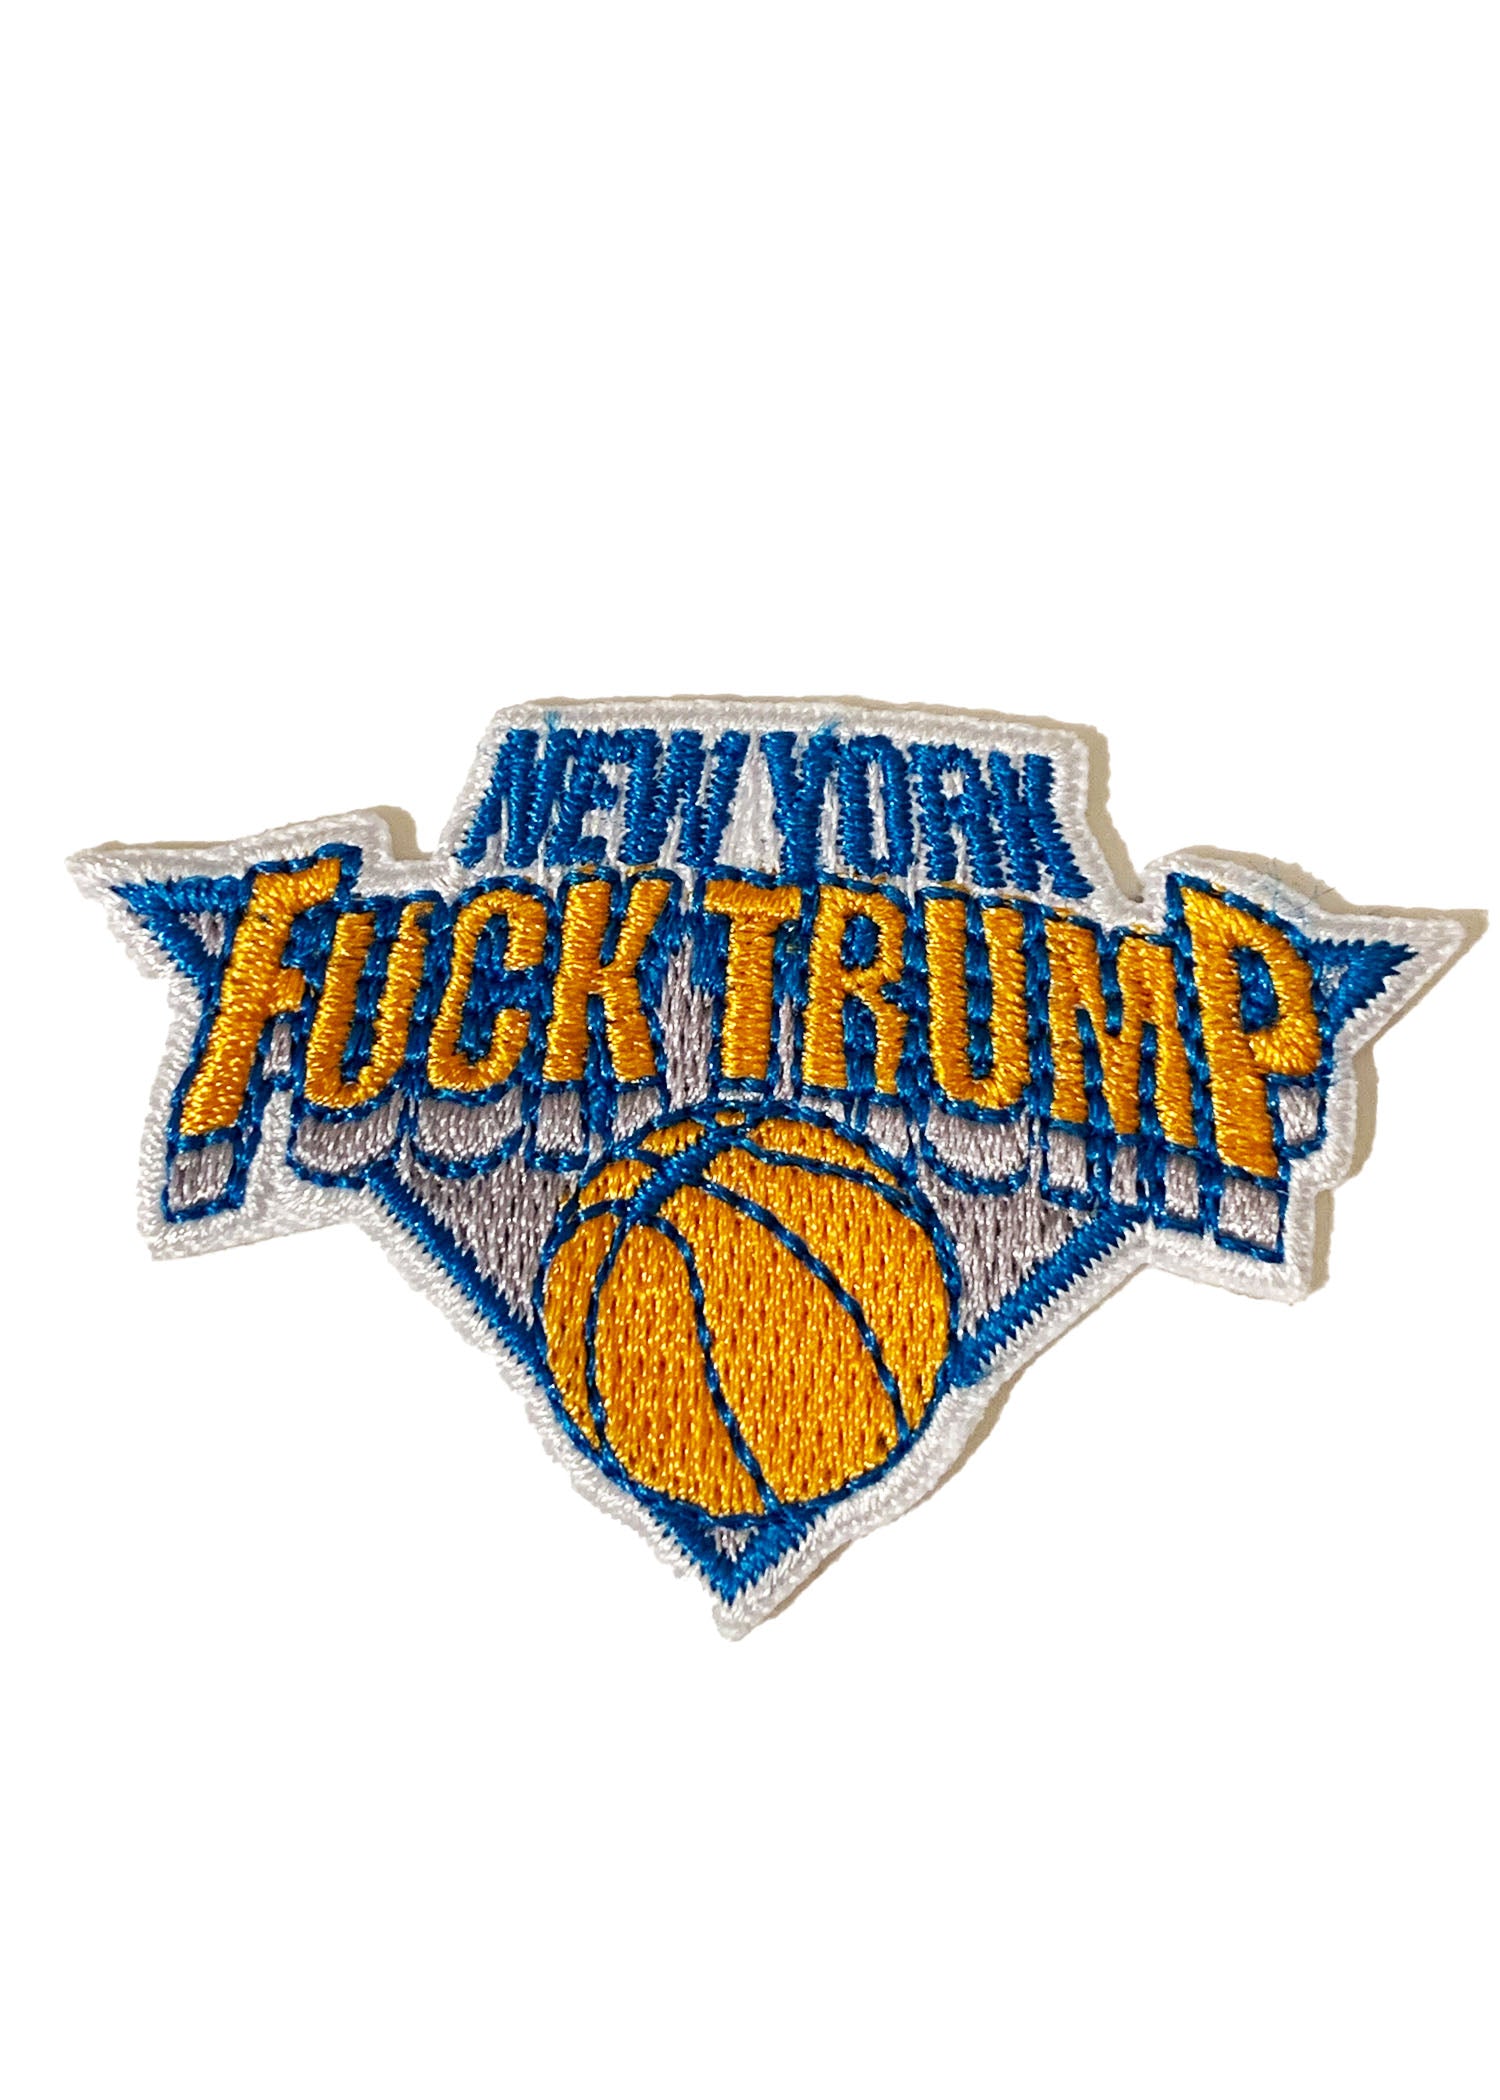 Fuck Trump NY Knicks Parody Iron On Patch